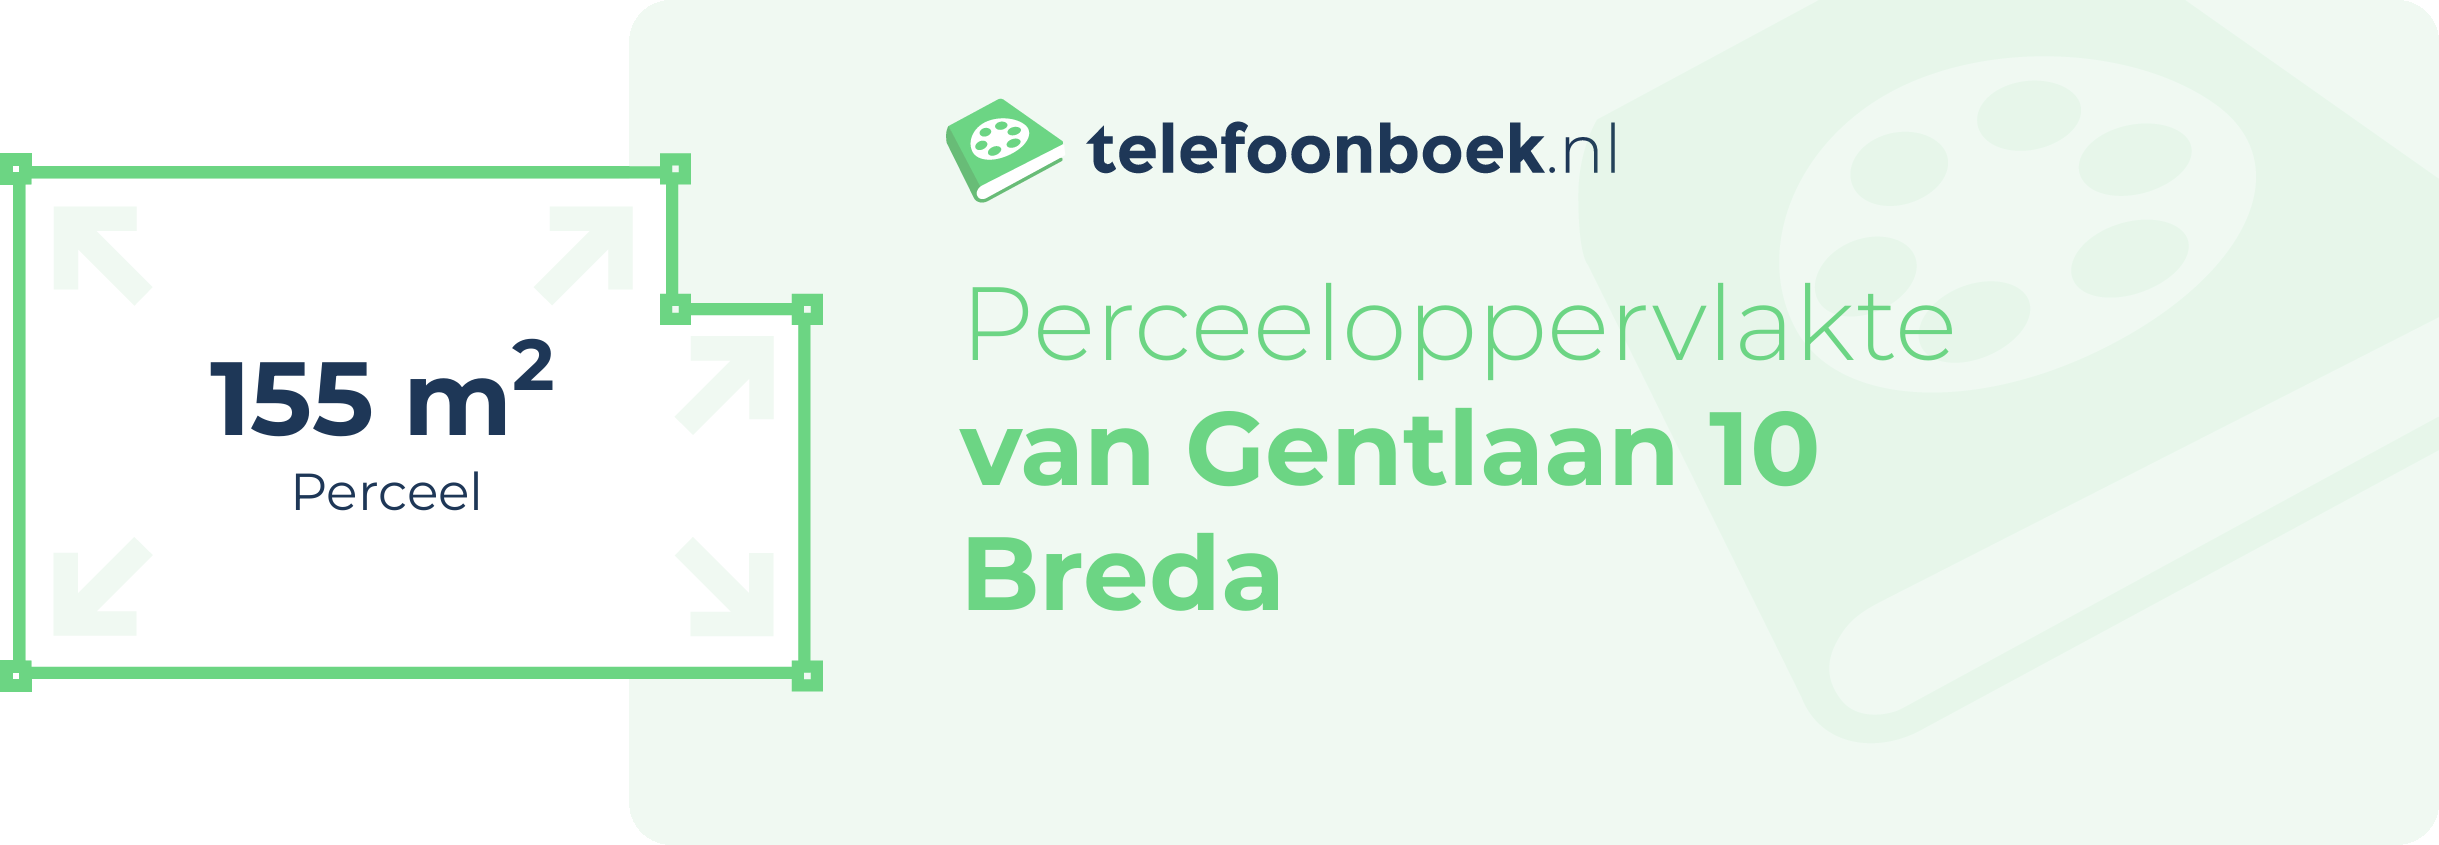 Perceeloppervlakte Van Gentlaan 10 Breda